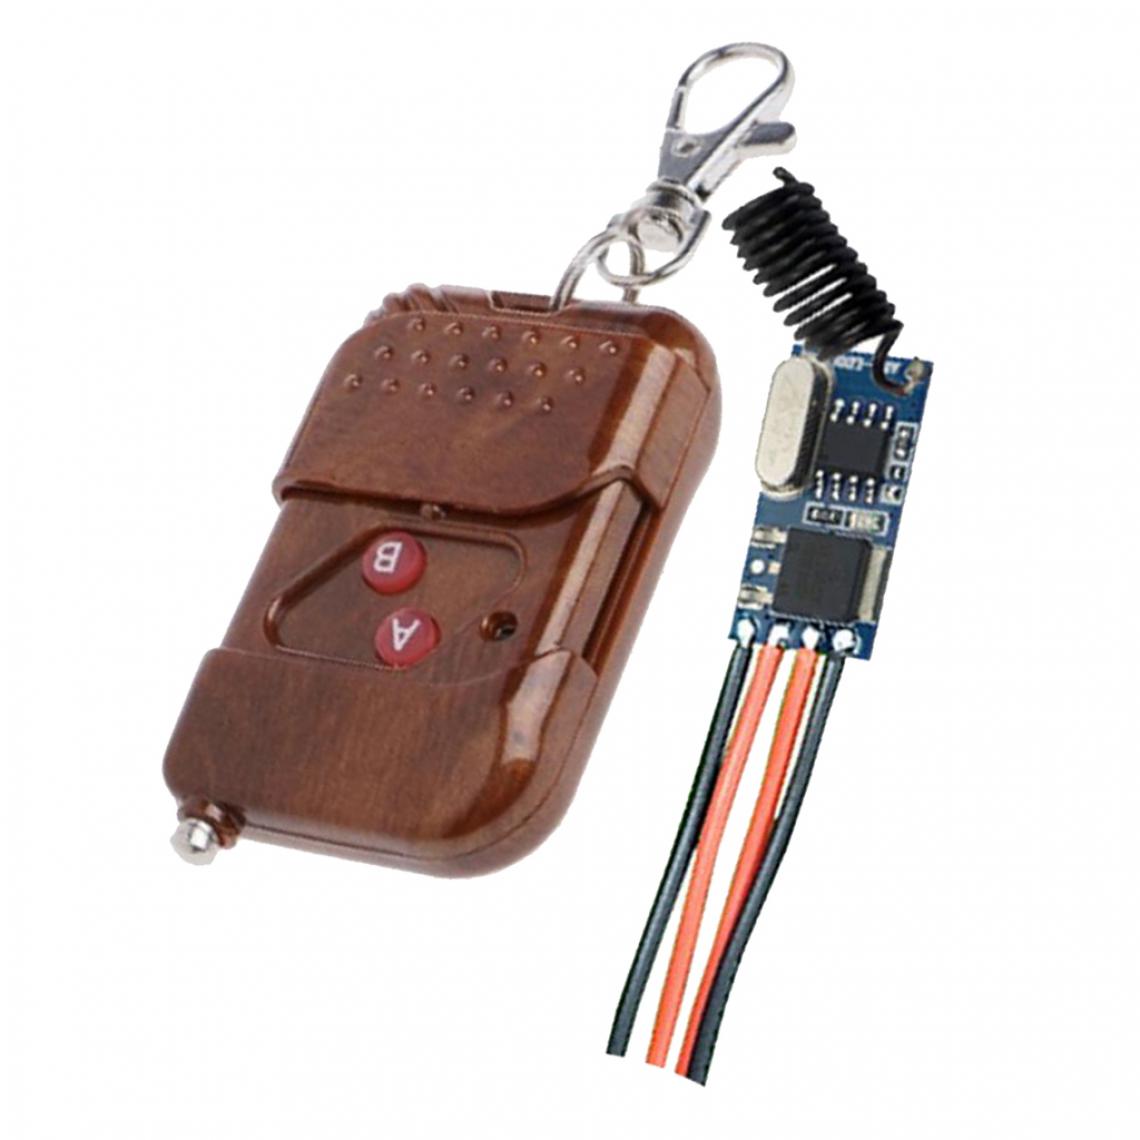 marque generique - Relais Commutateur Sans Fil Contrôleur de Lampe à LED Microrécepteur Grand bouton avec couvercle de protection 1527 deux touches - Interrupteurs différentiels